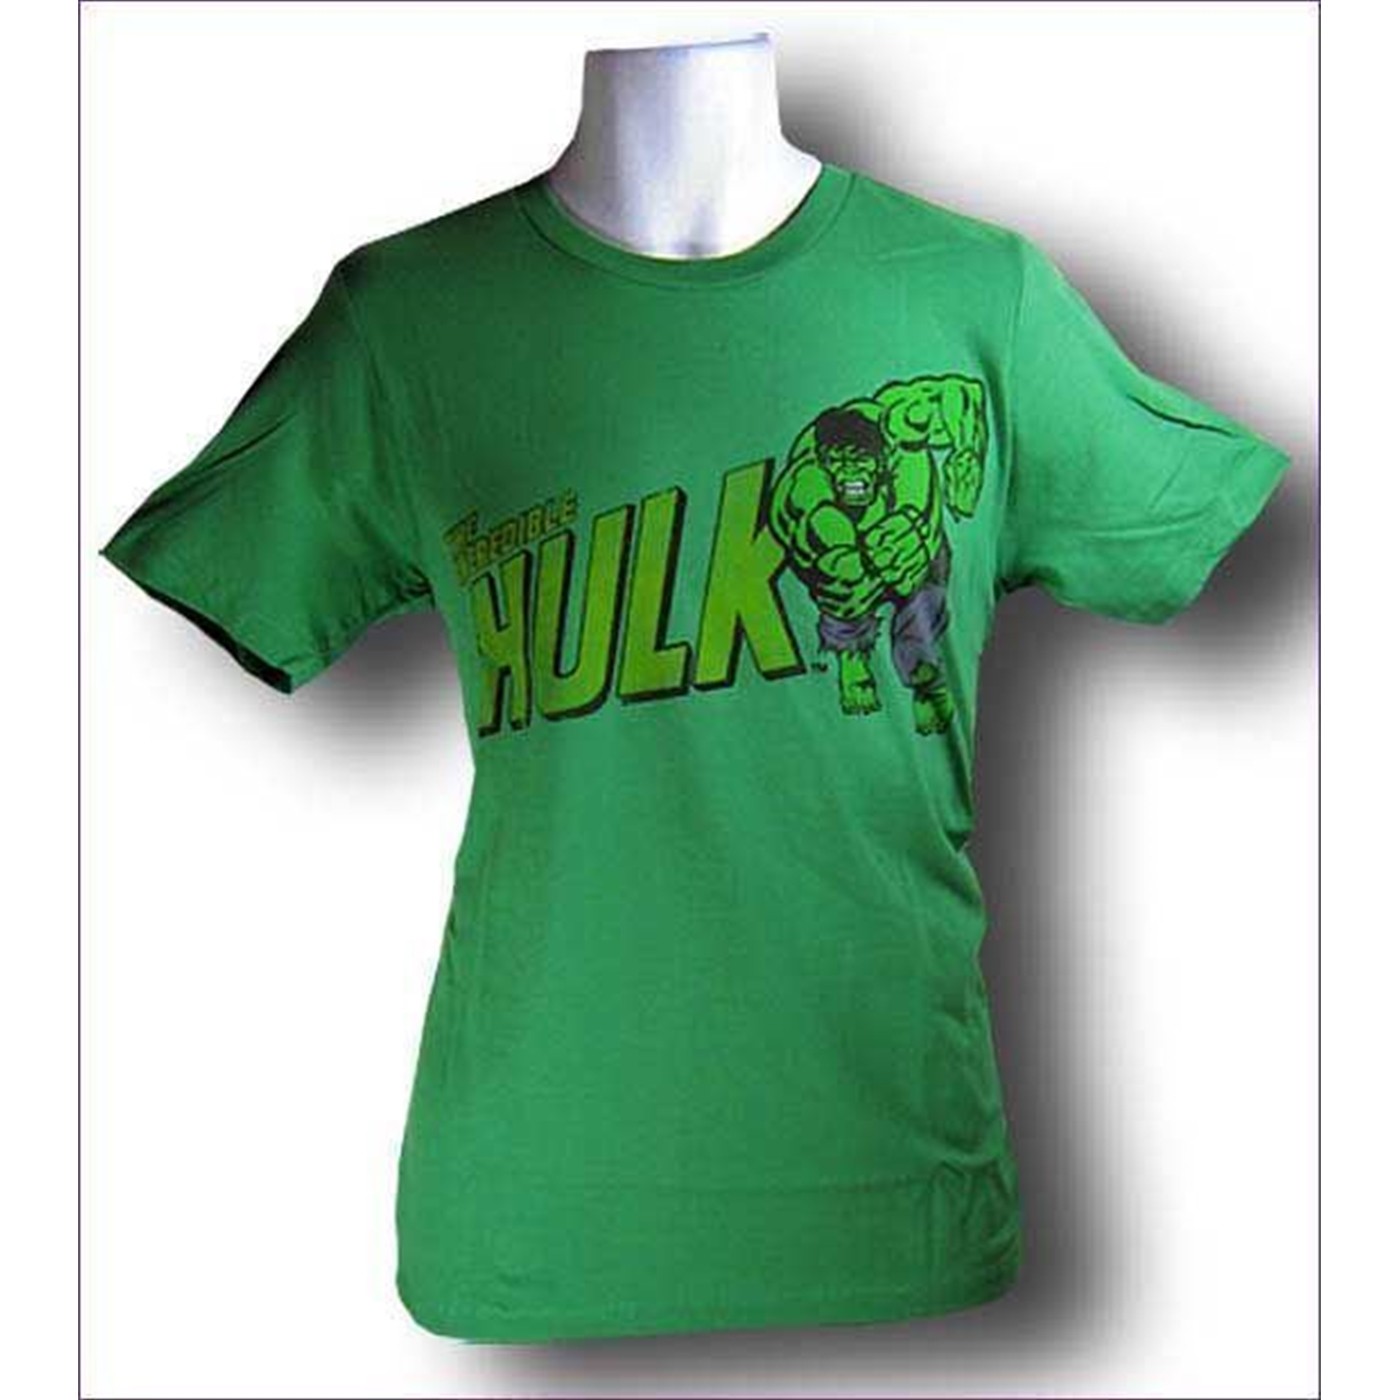 The Hulk T-Shirt Run Hulk Run!